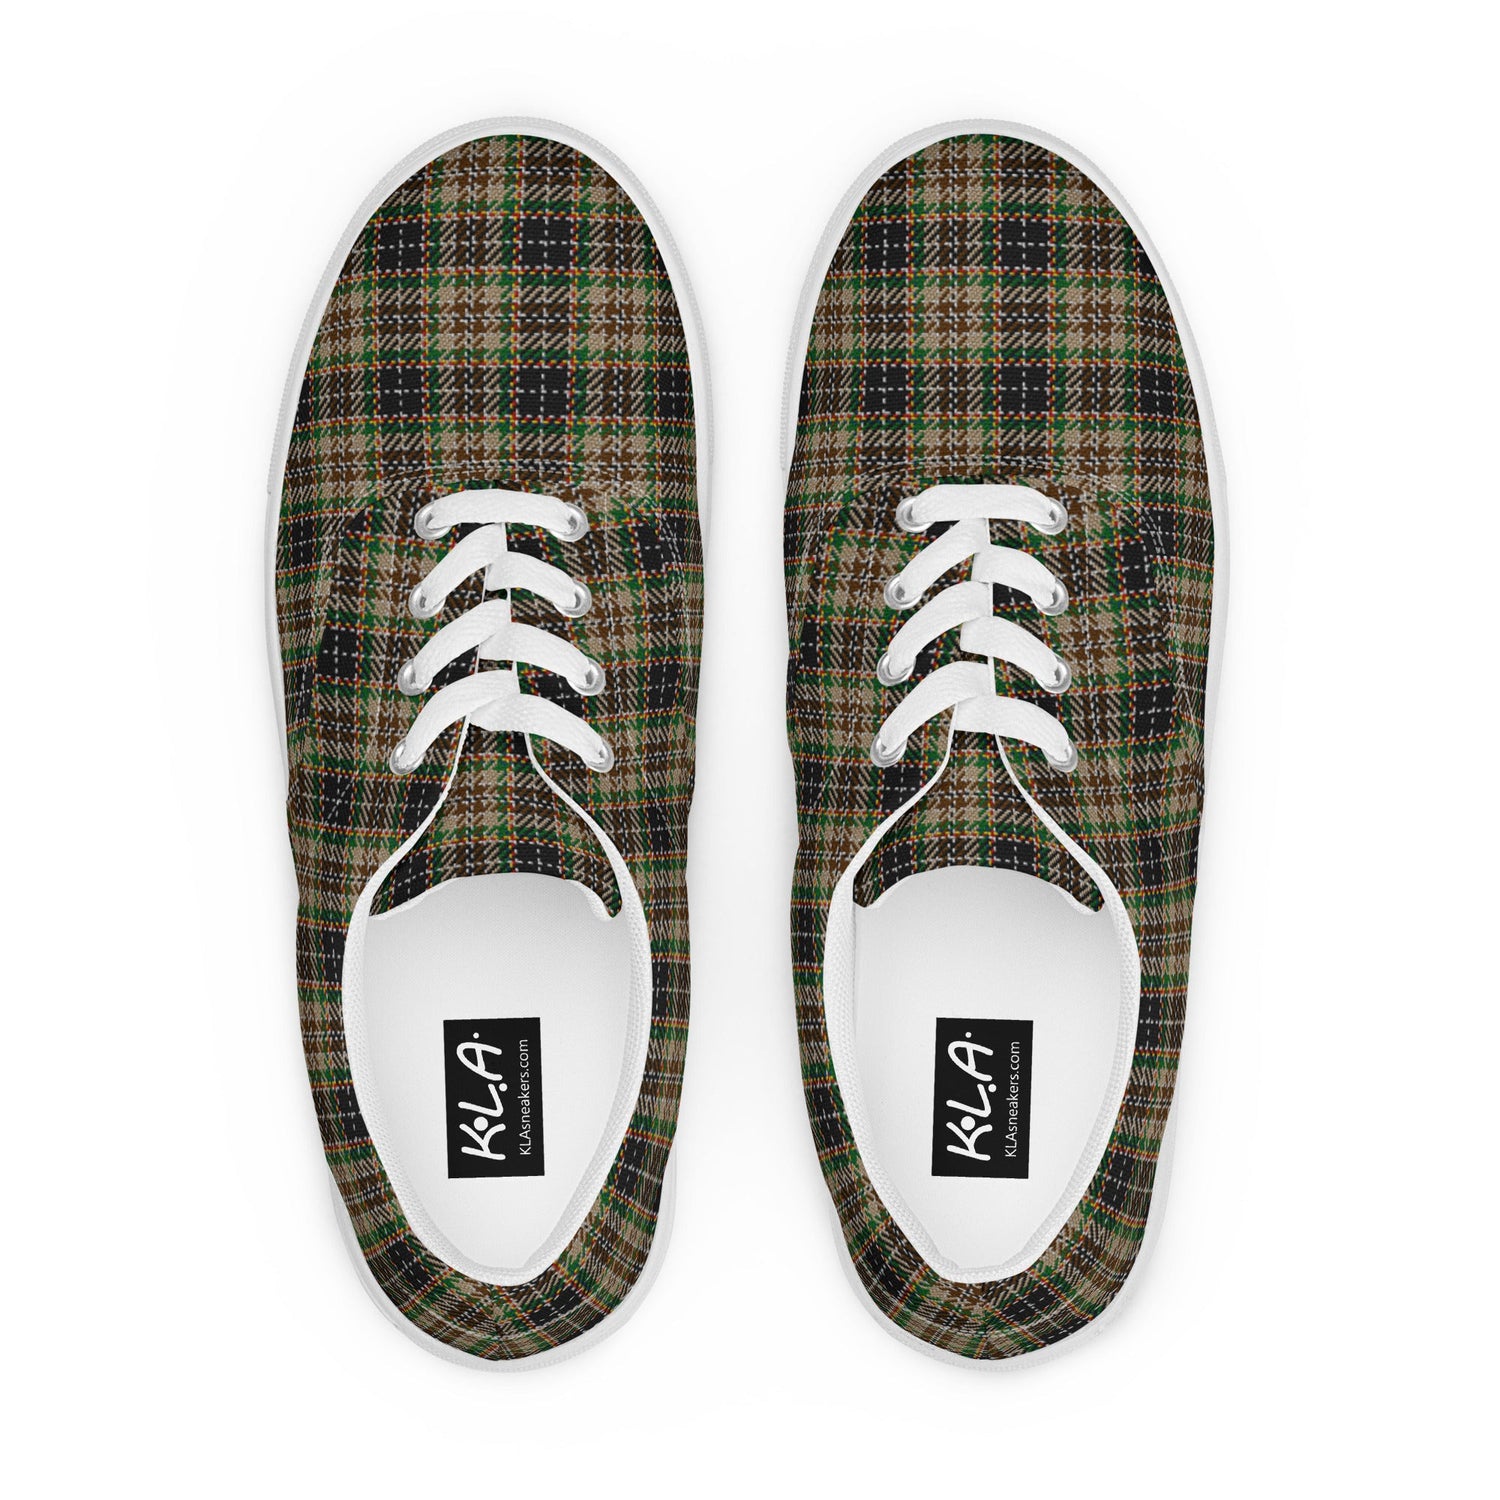 klasneakers Men’s lace-up canvas shoes - Jemi Plaid Tartan